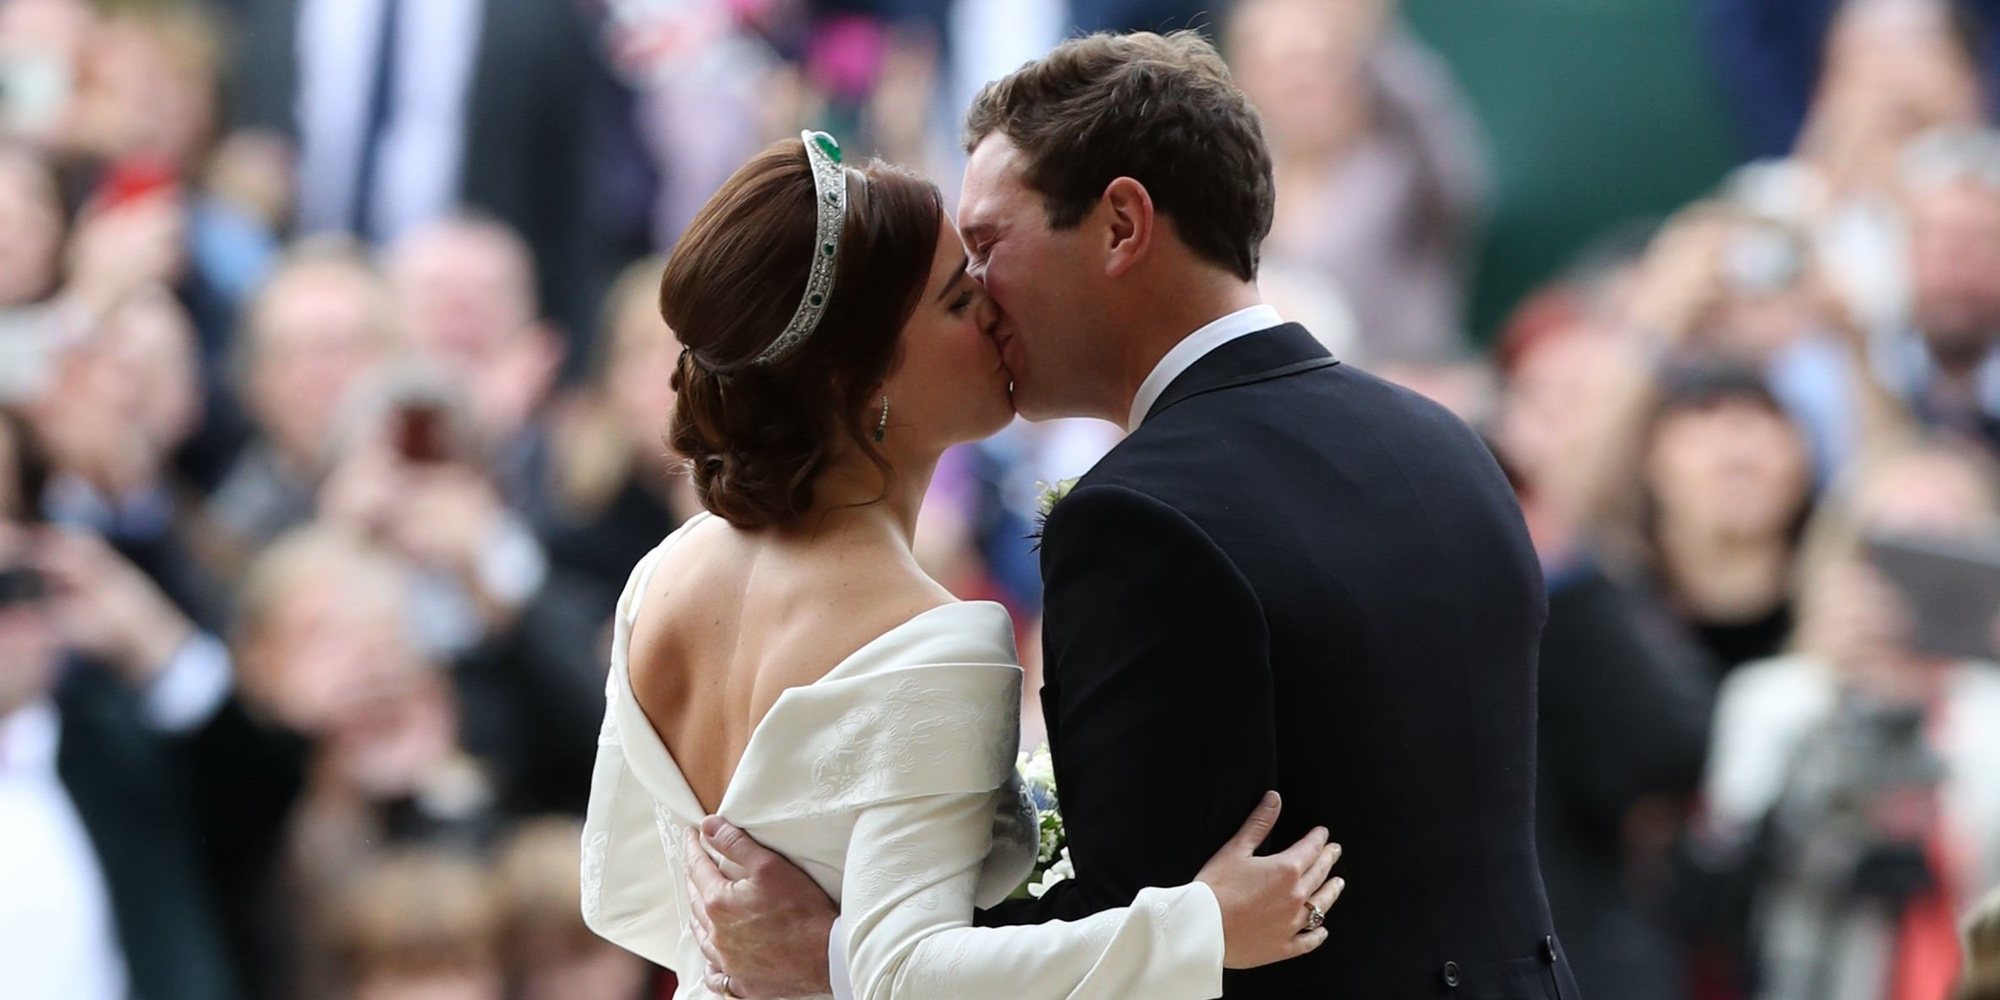 La boda de Eugenia de York y Jack Brooksbank pierde contra la del Príncipe Harry y Meghan Markle